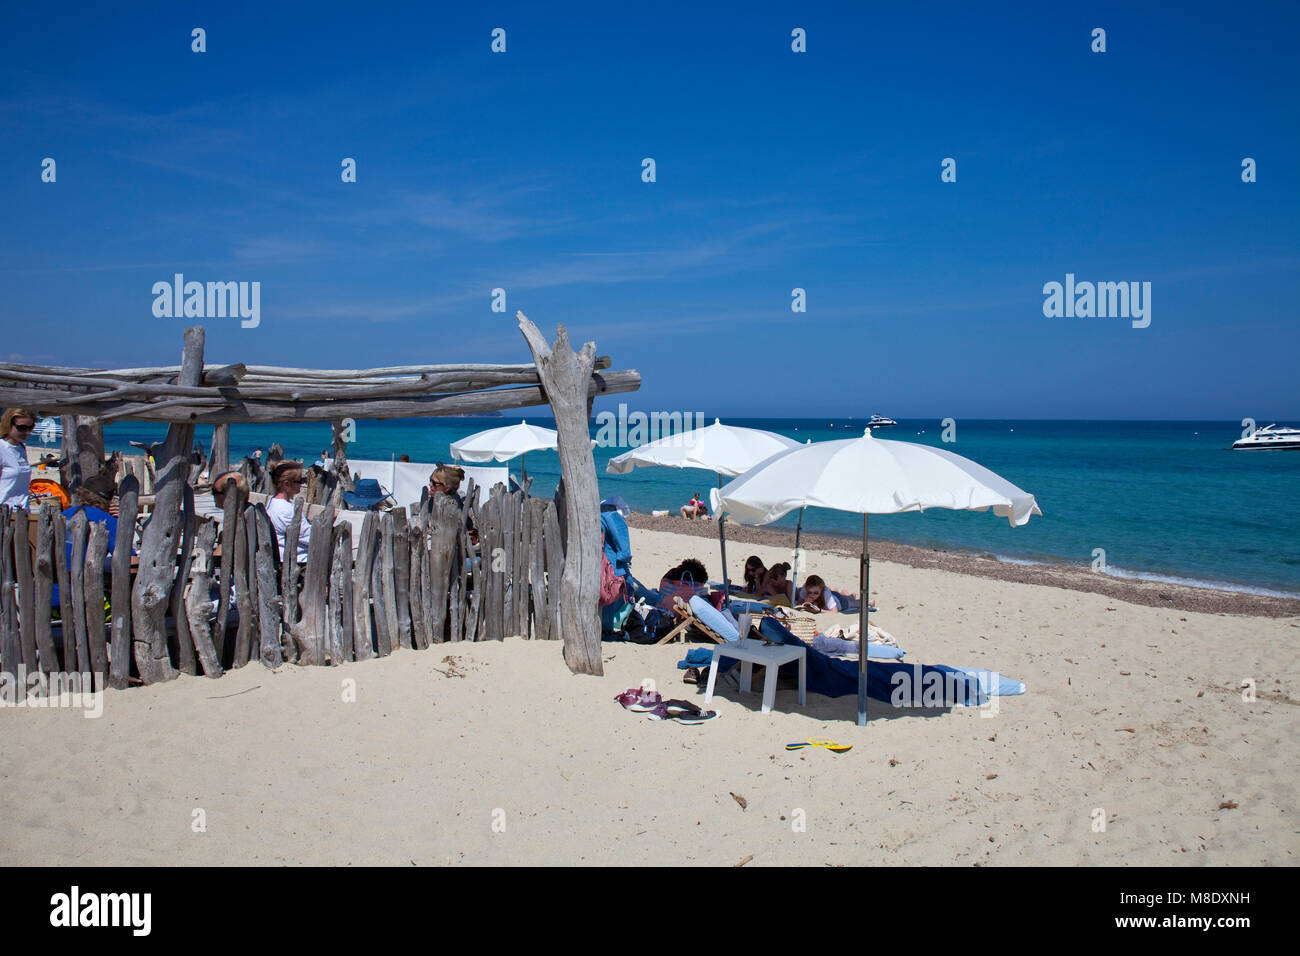 Idyllischen Strand Bar am Strand von Pampelonne, beliebten Strand von Saint Tropez, Côte d'Azur, Südfrankreich, Cote d'Azur, Frankreich, Europa Stockfoto